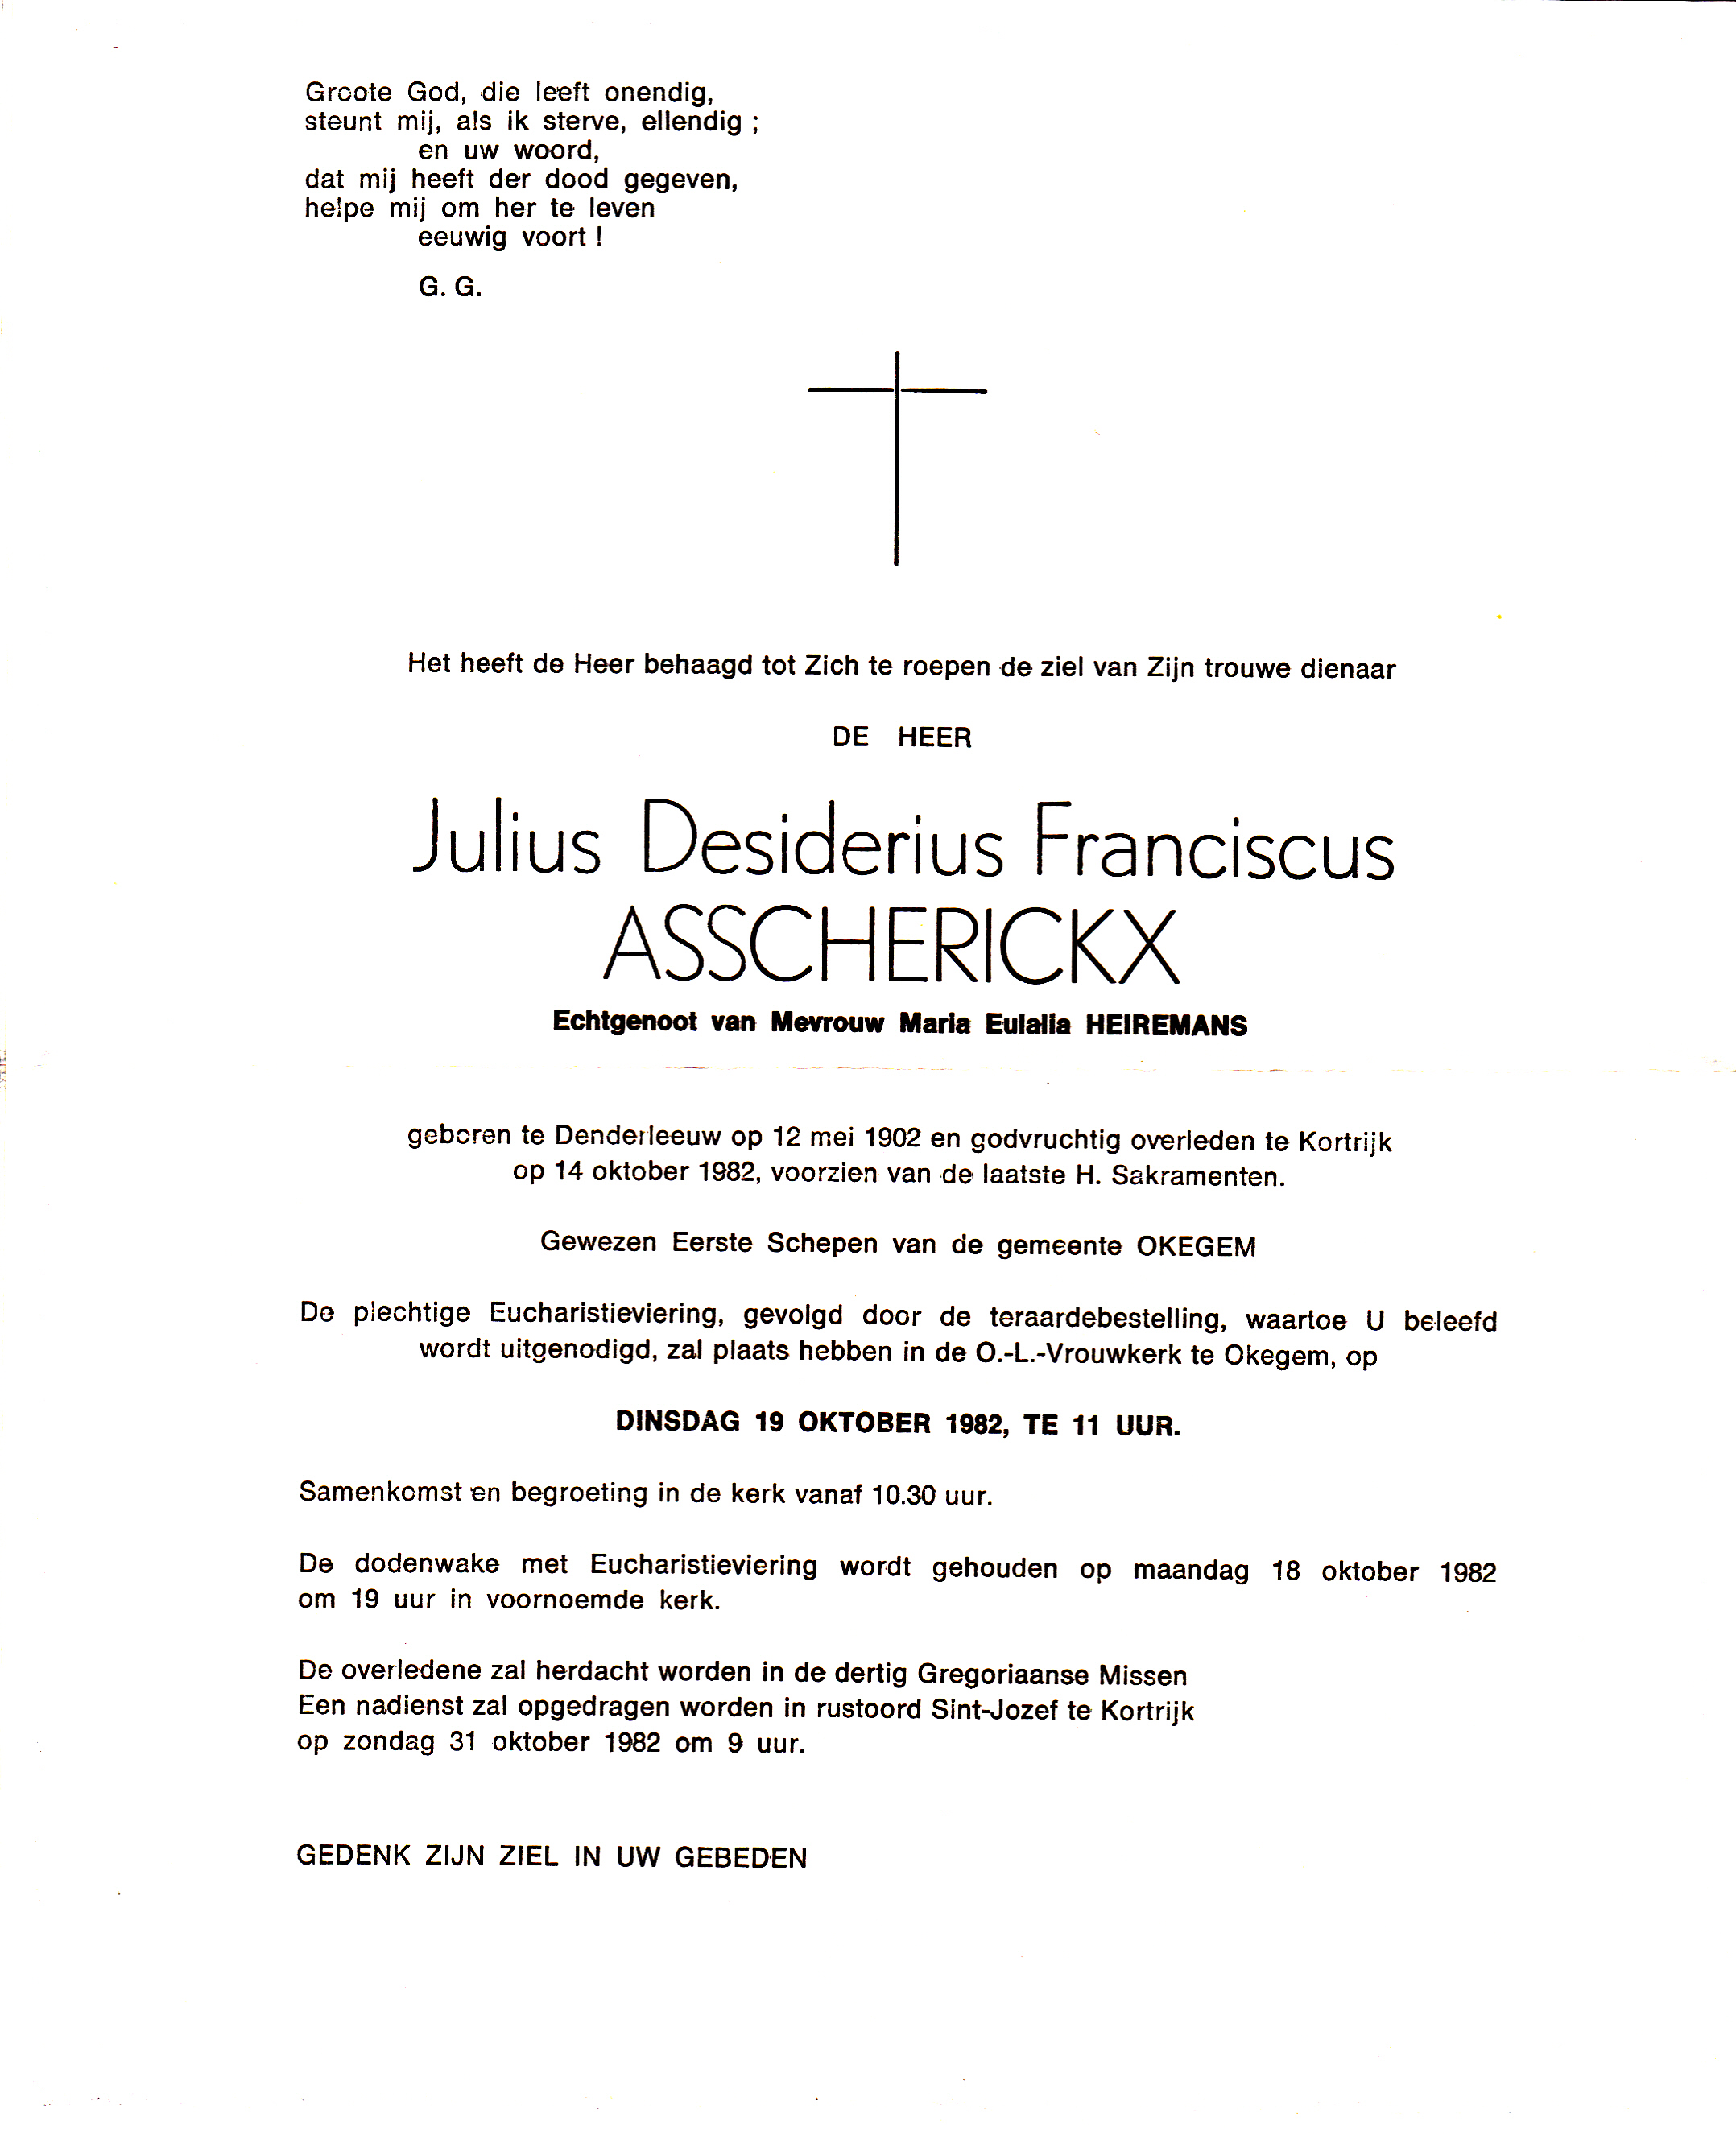 Asscherickx Julius Desiderius Franciscus    